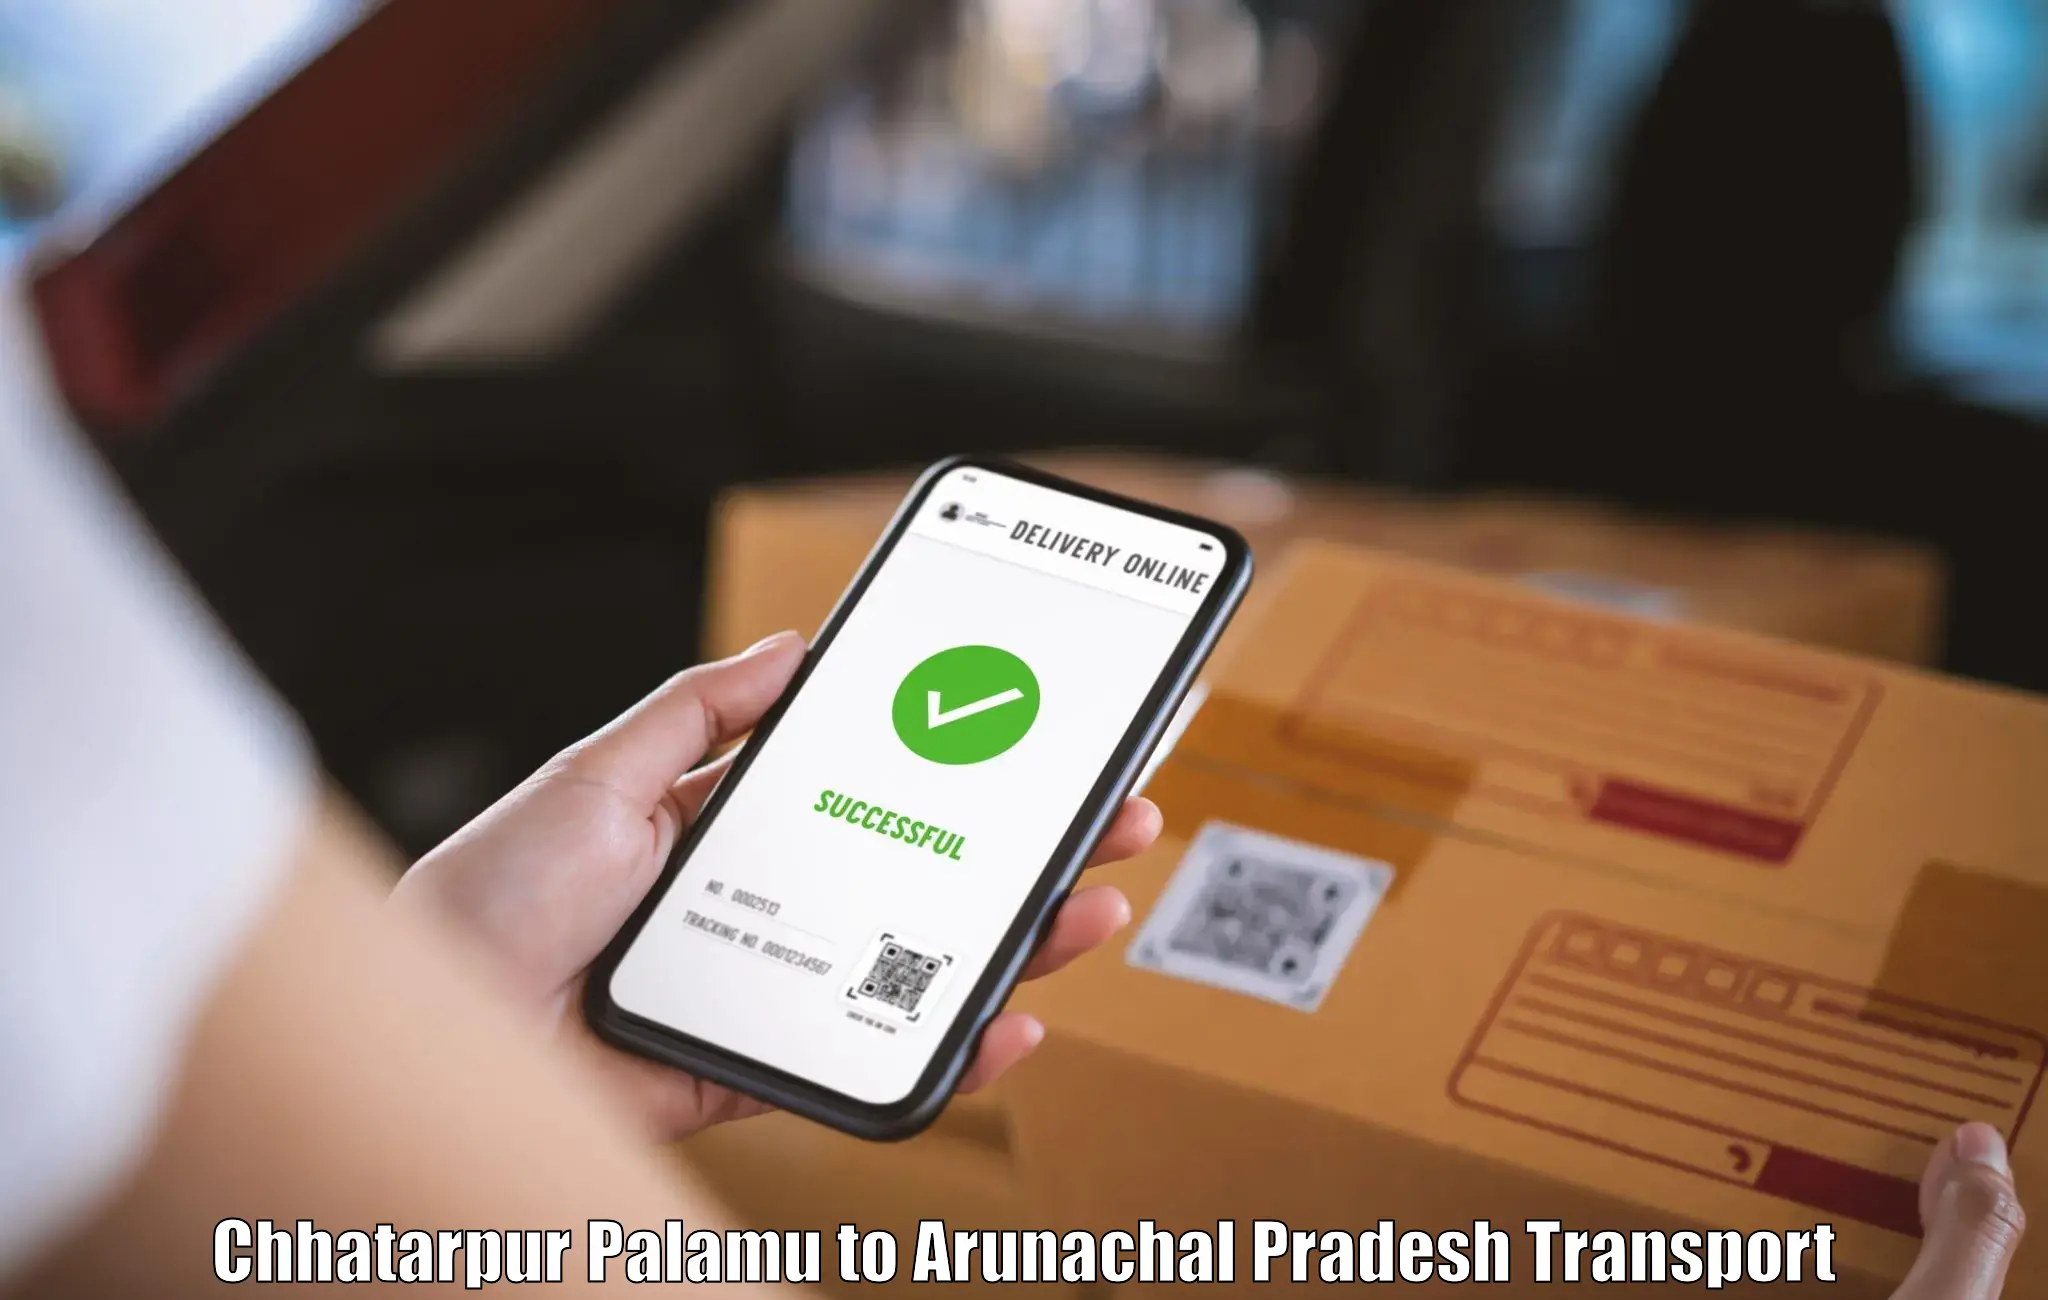 Scooty transport charges Chhatarpur Palamu to Namsai